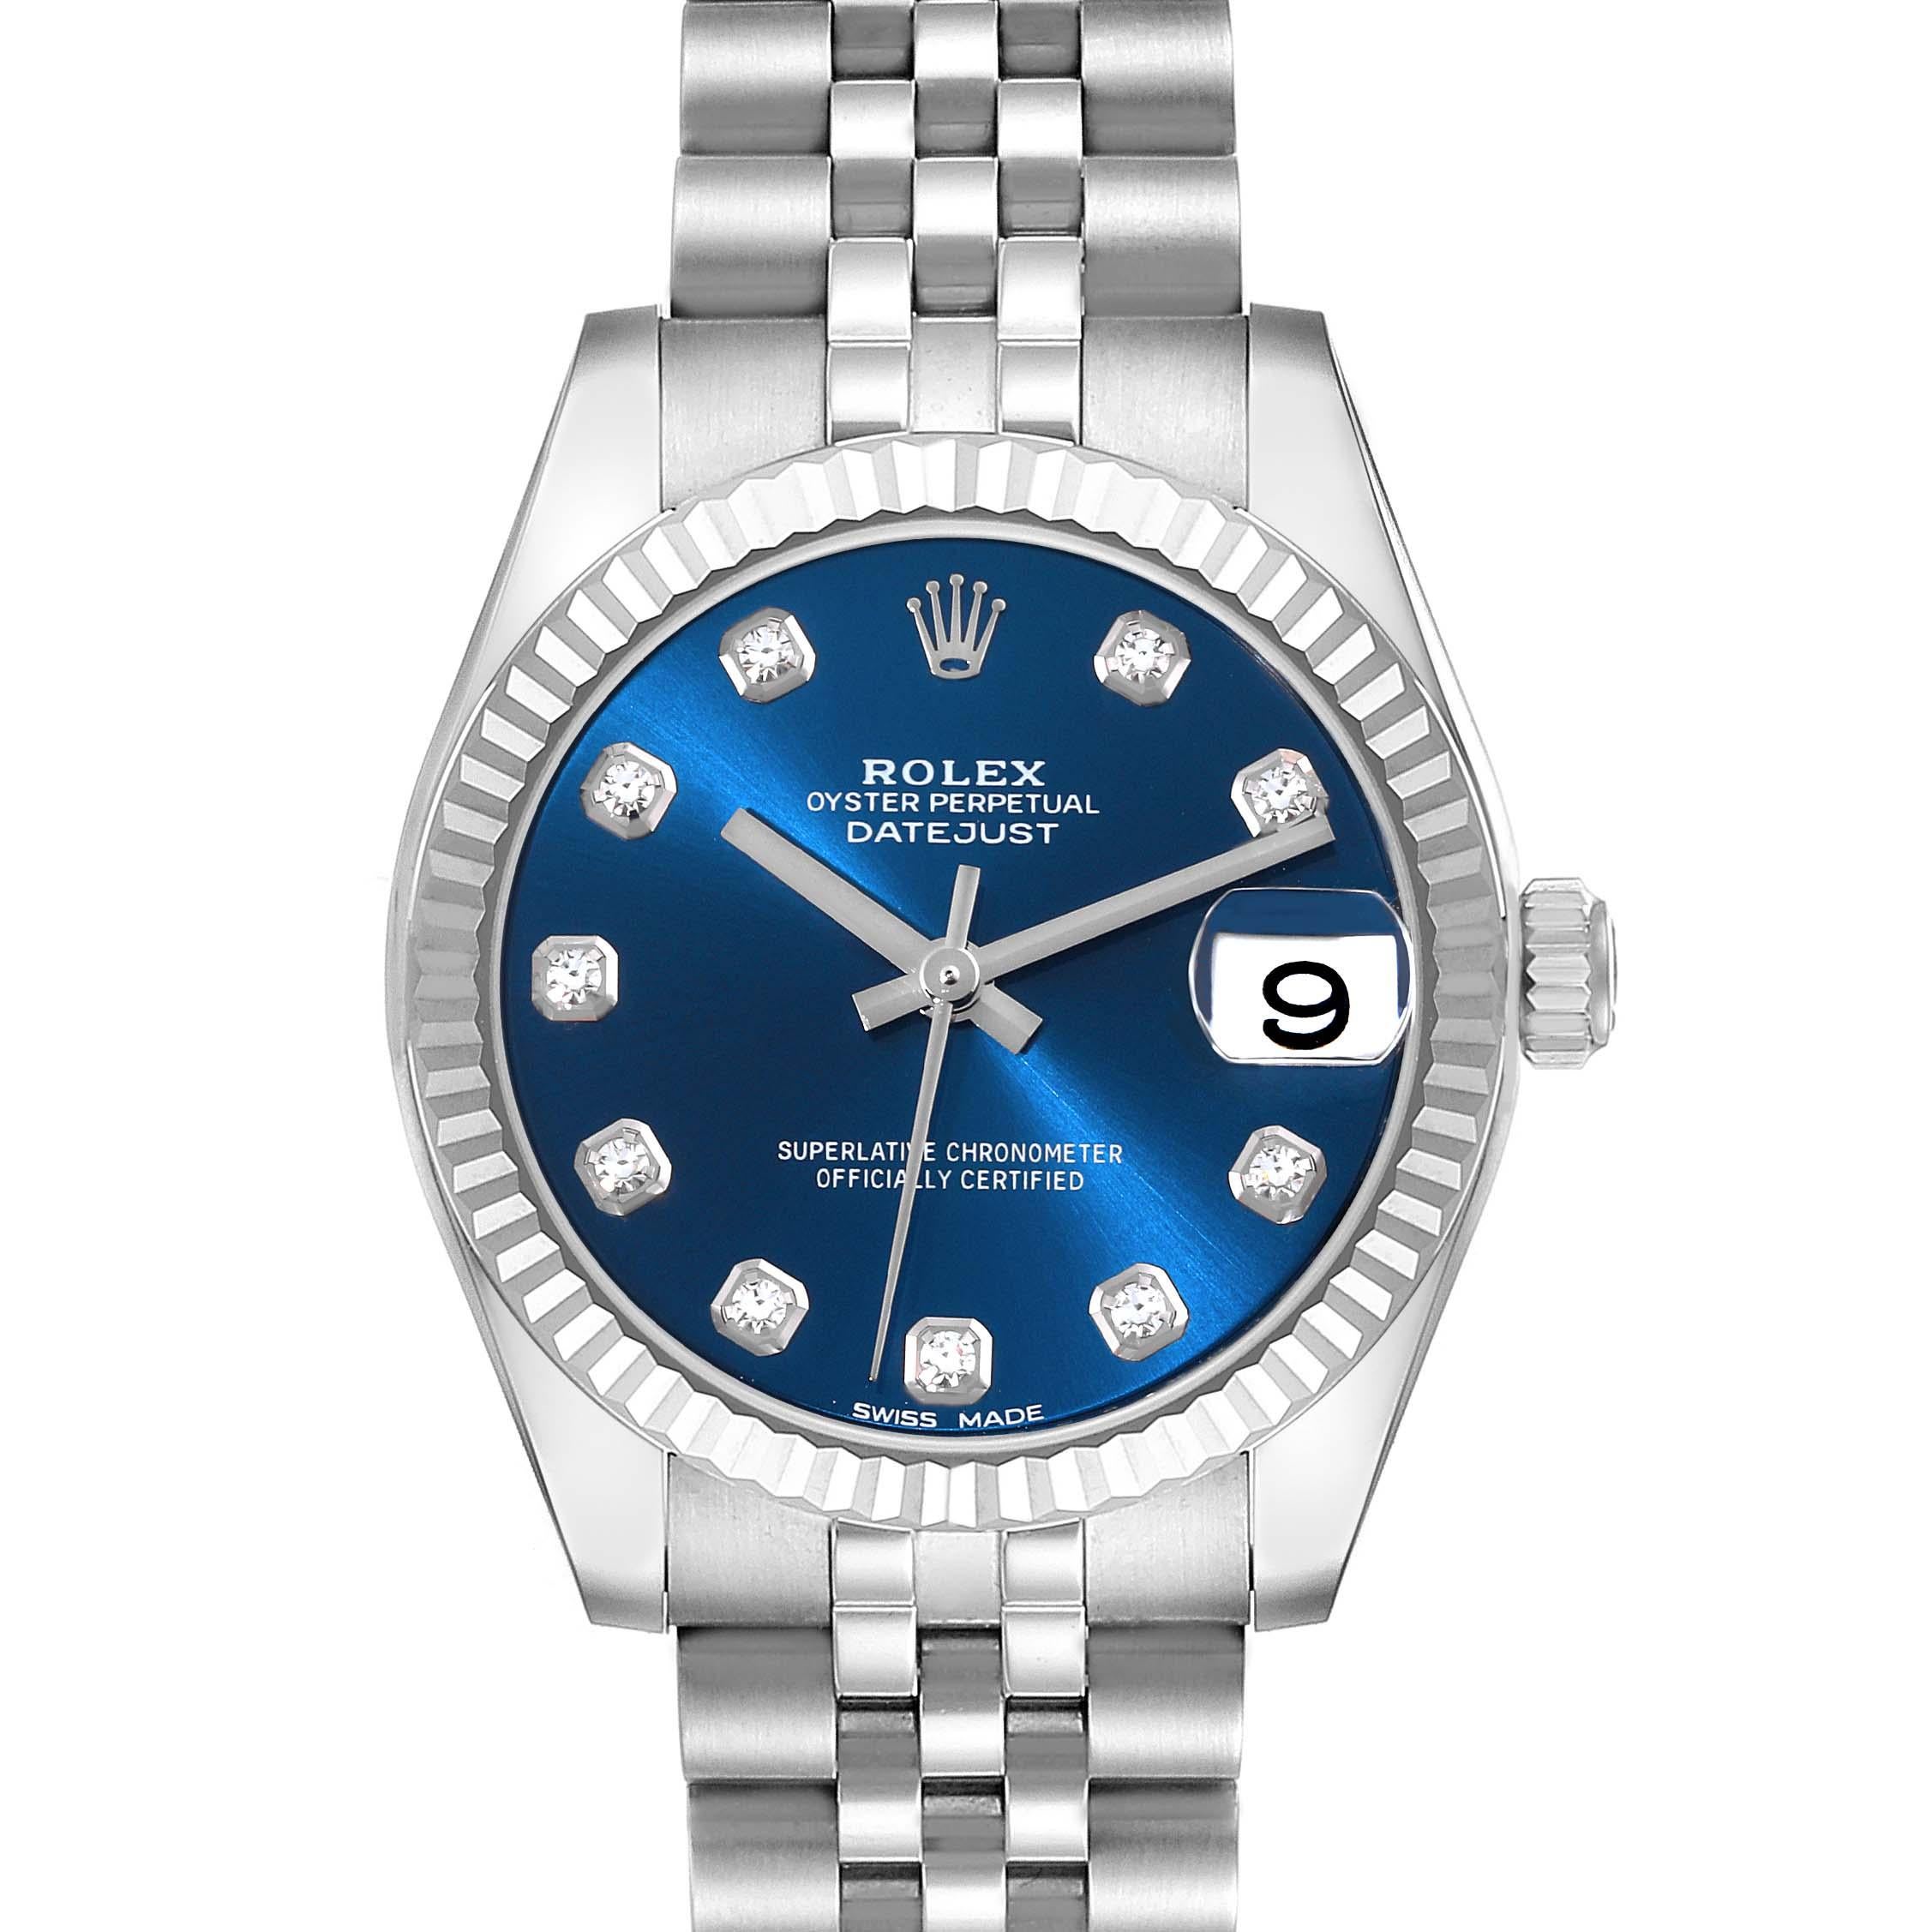 Rolex Datejust Midsize Steel White Gold Blue Diamond Dial Ladies Watch 178274. Mouvement automatique à remontage automatique, officiellement certifié chronomètre. Boîtier oyster en acier inoxydable de 31.0 mm de diamètre. Logo Rolex sur la couronne.